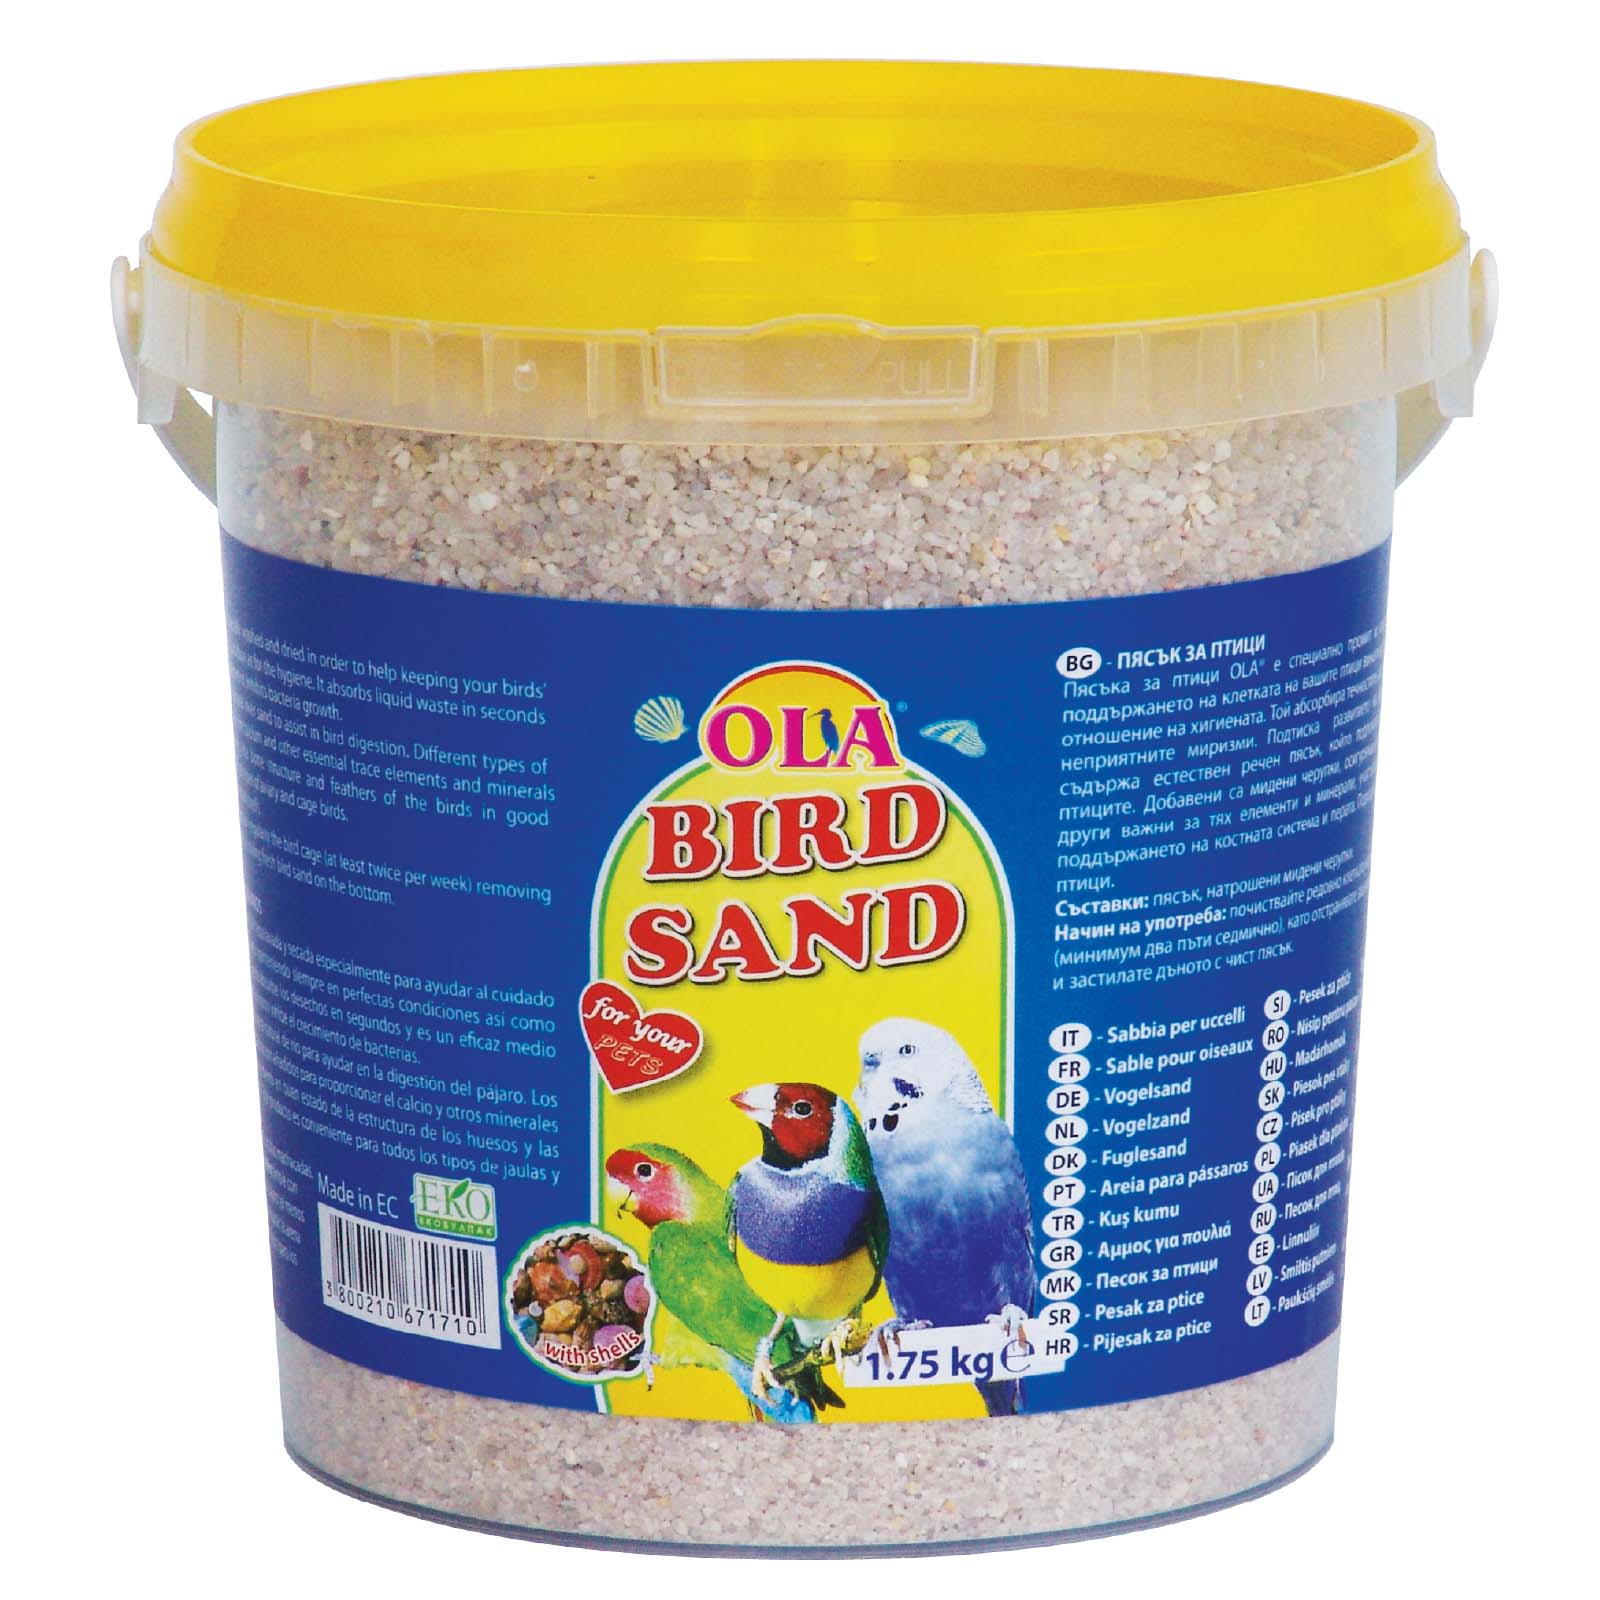 Ola nisip pentru păsări, găleată 1,75kg